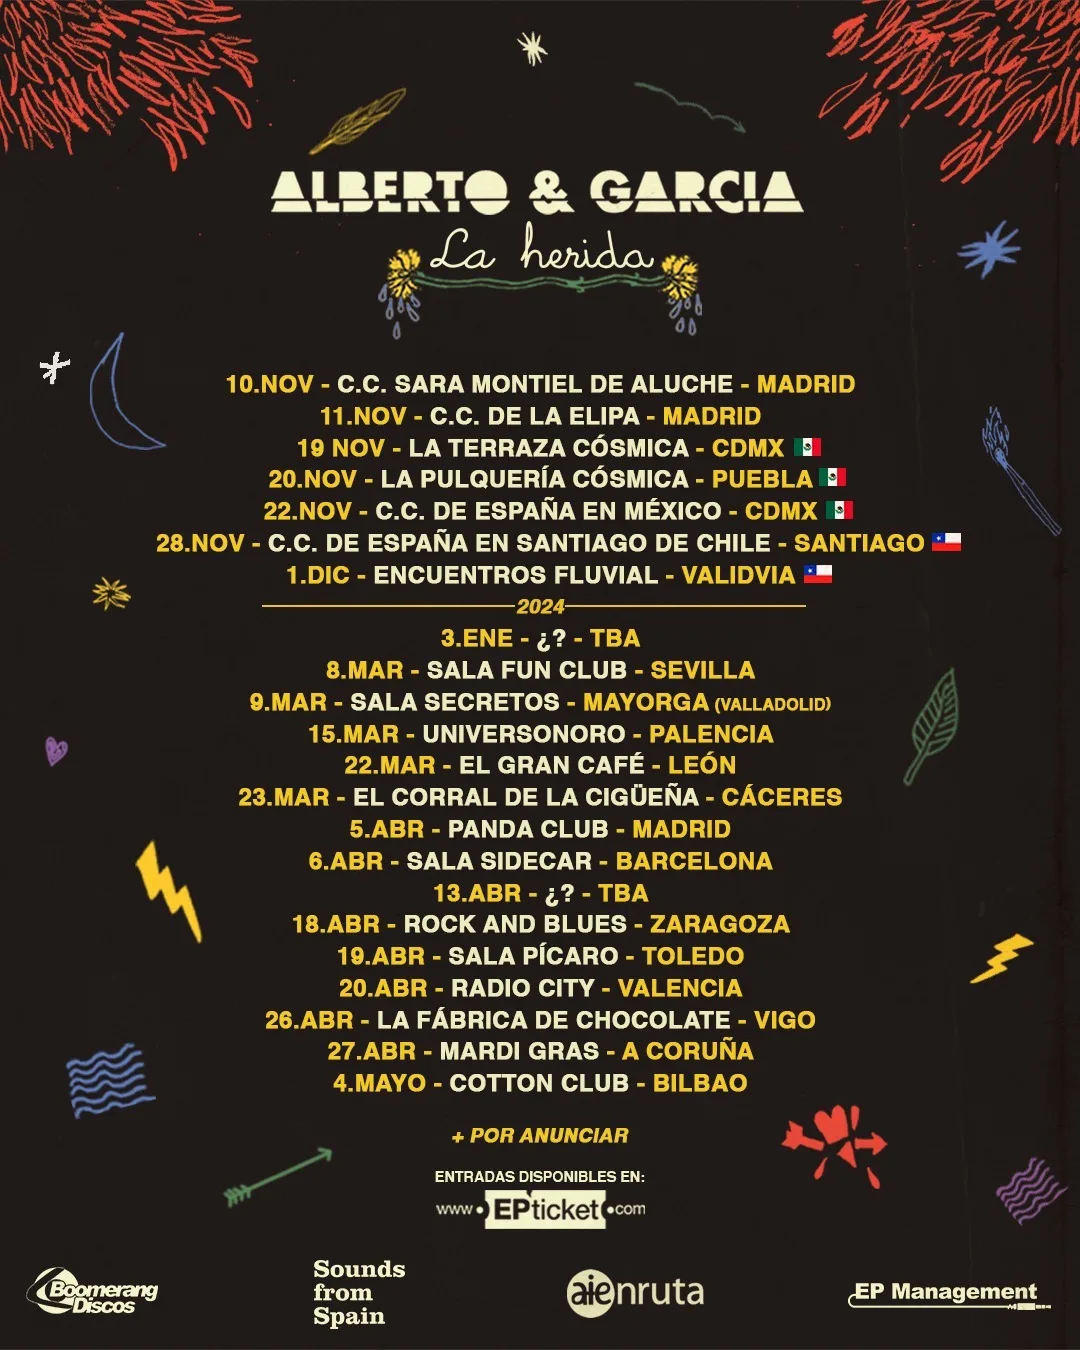 Conciertos de Alberto & García en Galicia